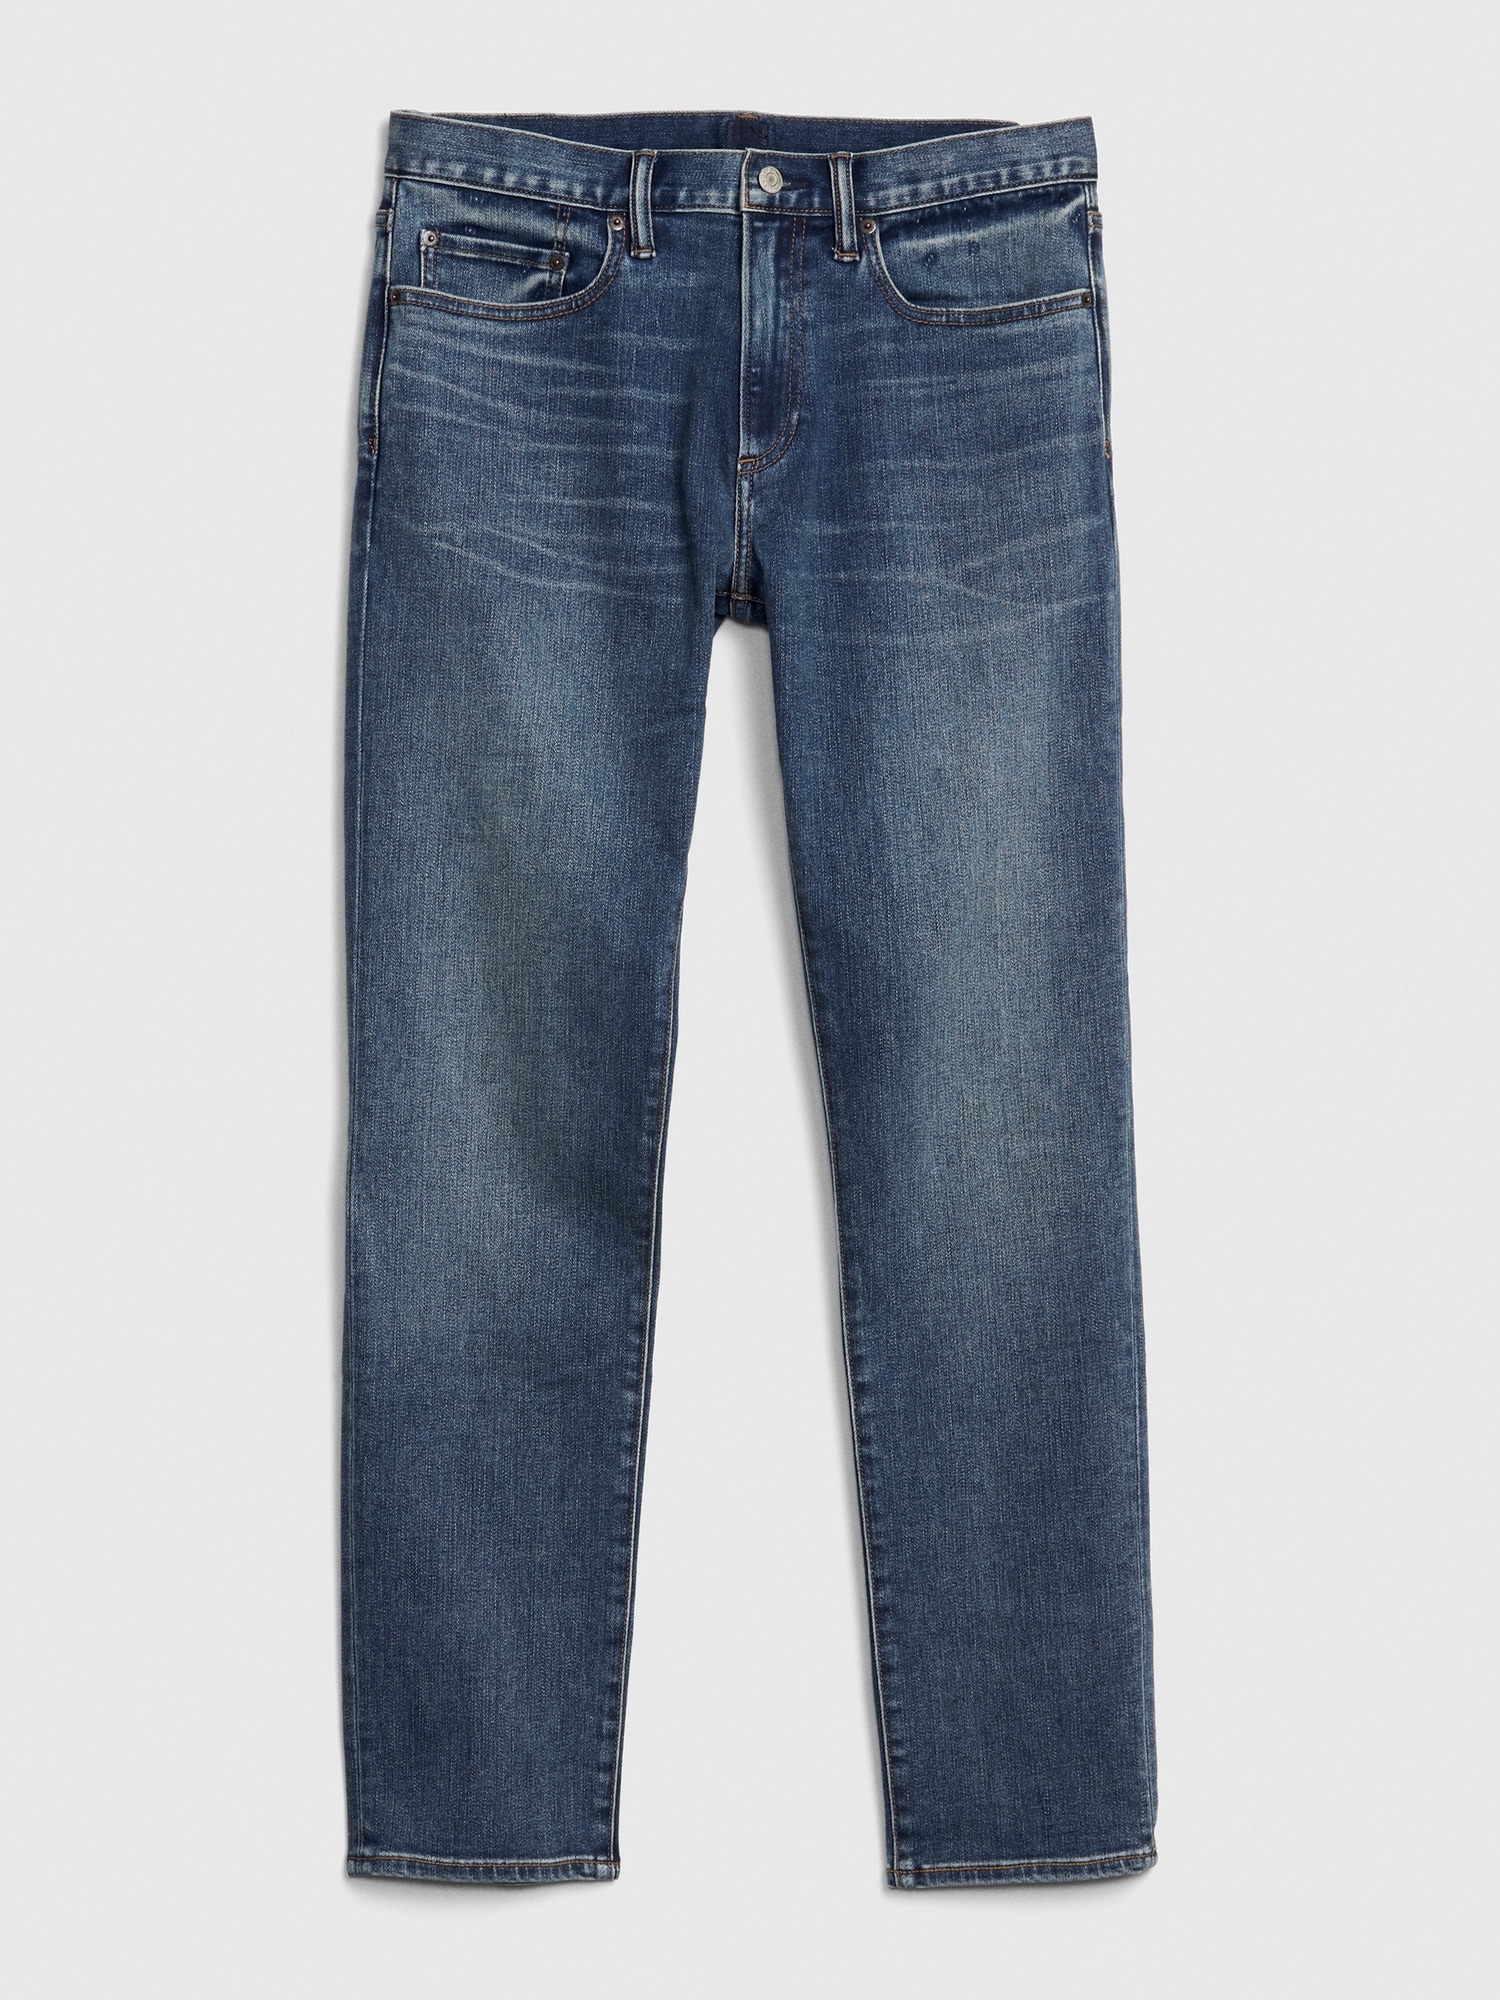 Soft Wear Slim Jeans With Washwell™ | Gap